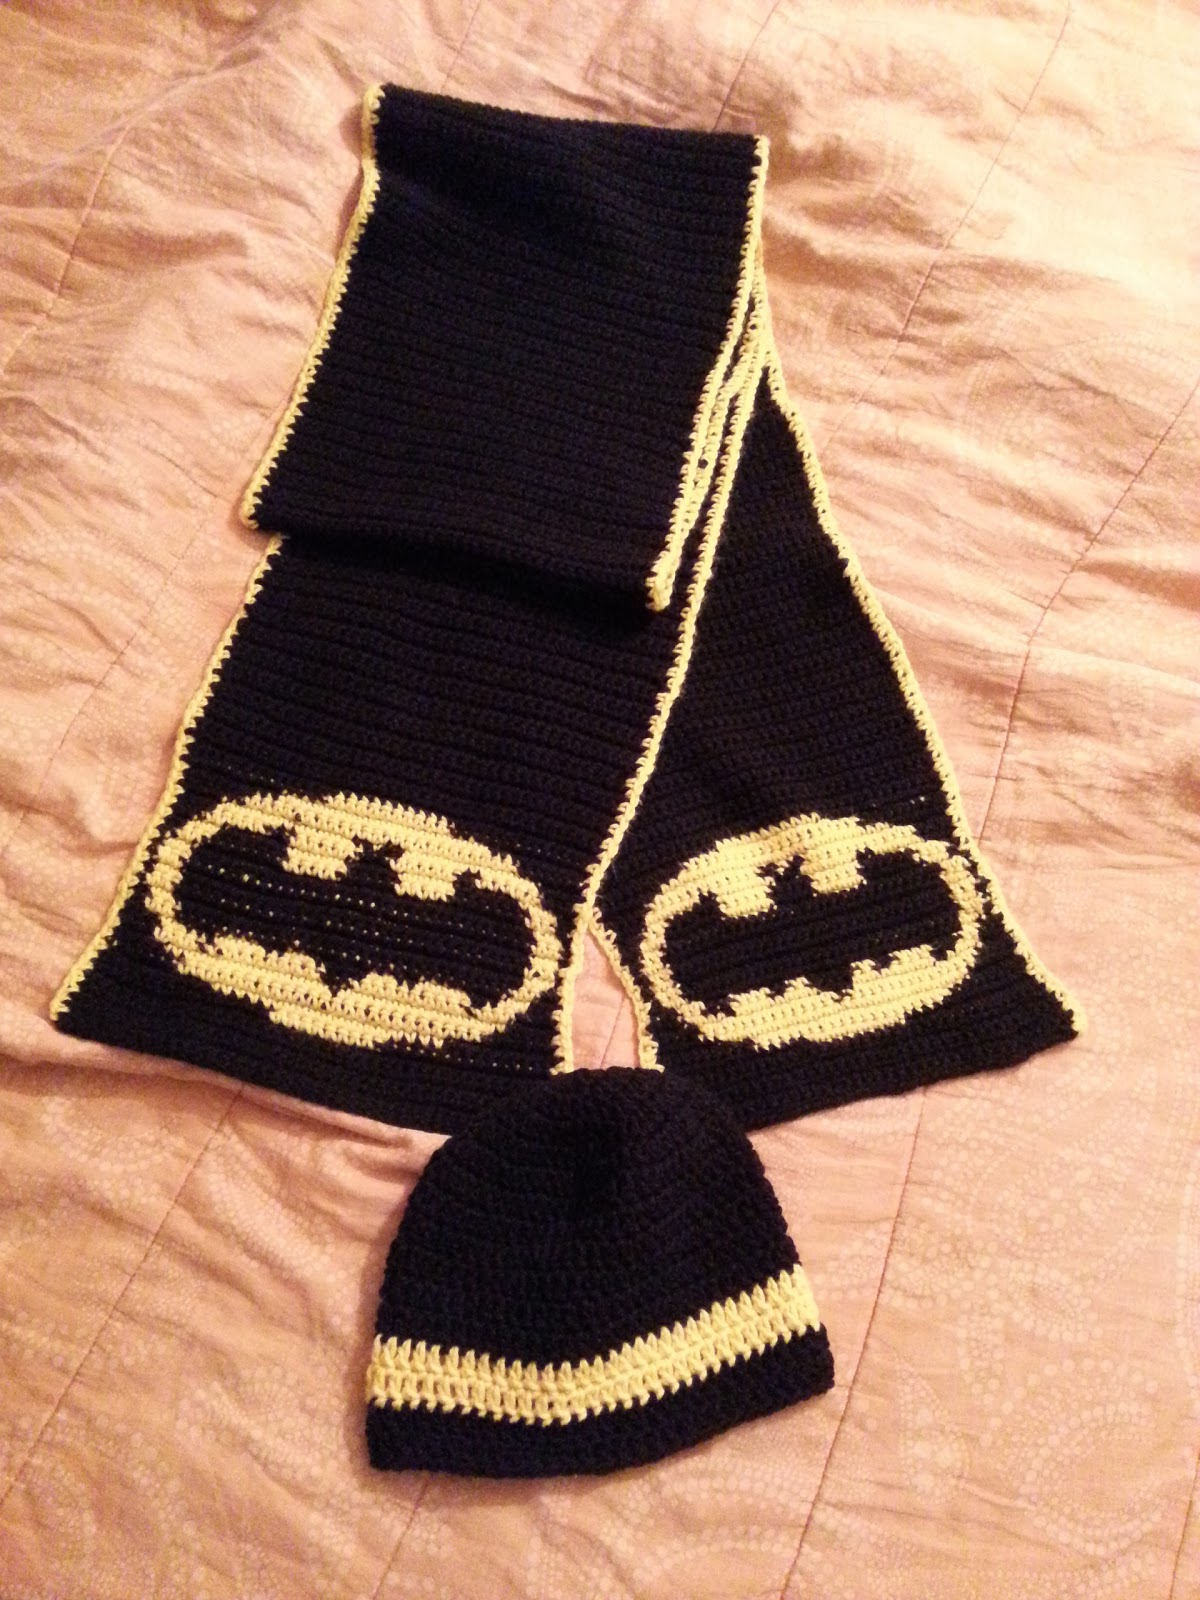 Crochet Batman Hat Pattern Crochet From J Batman Scarf And Beanie Pattern